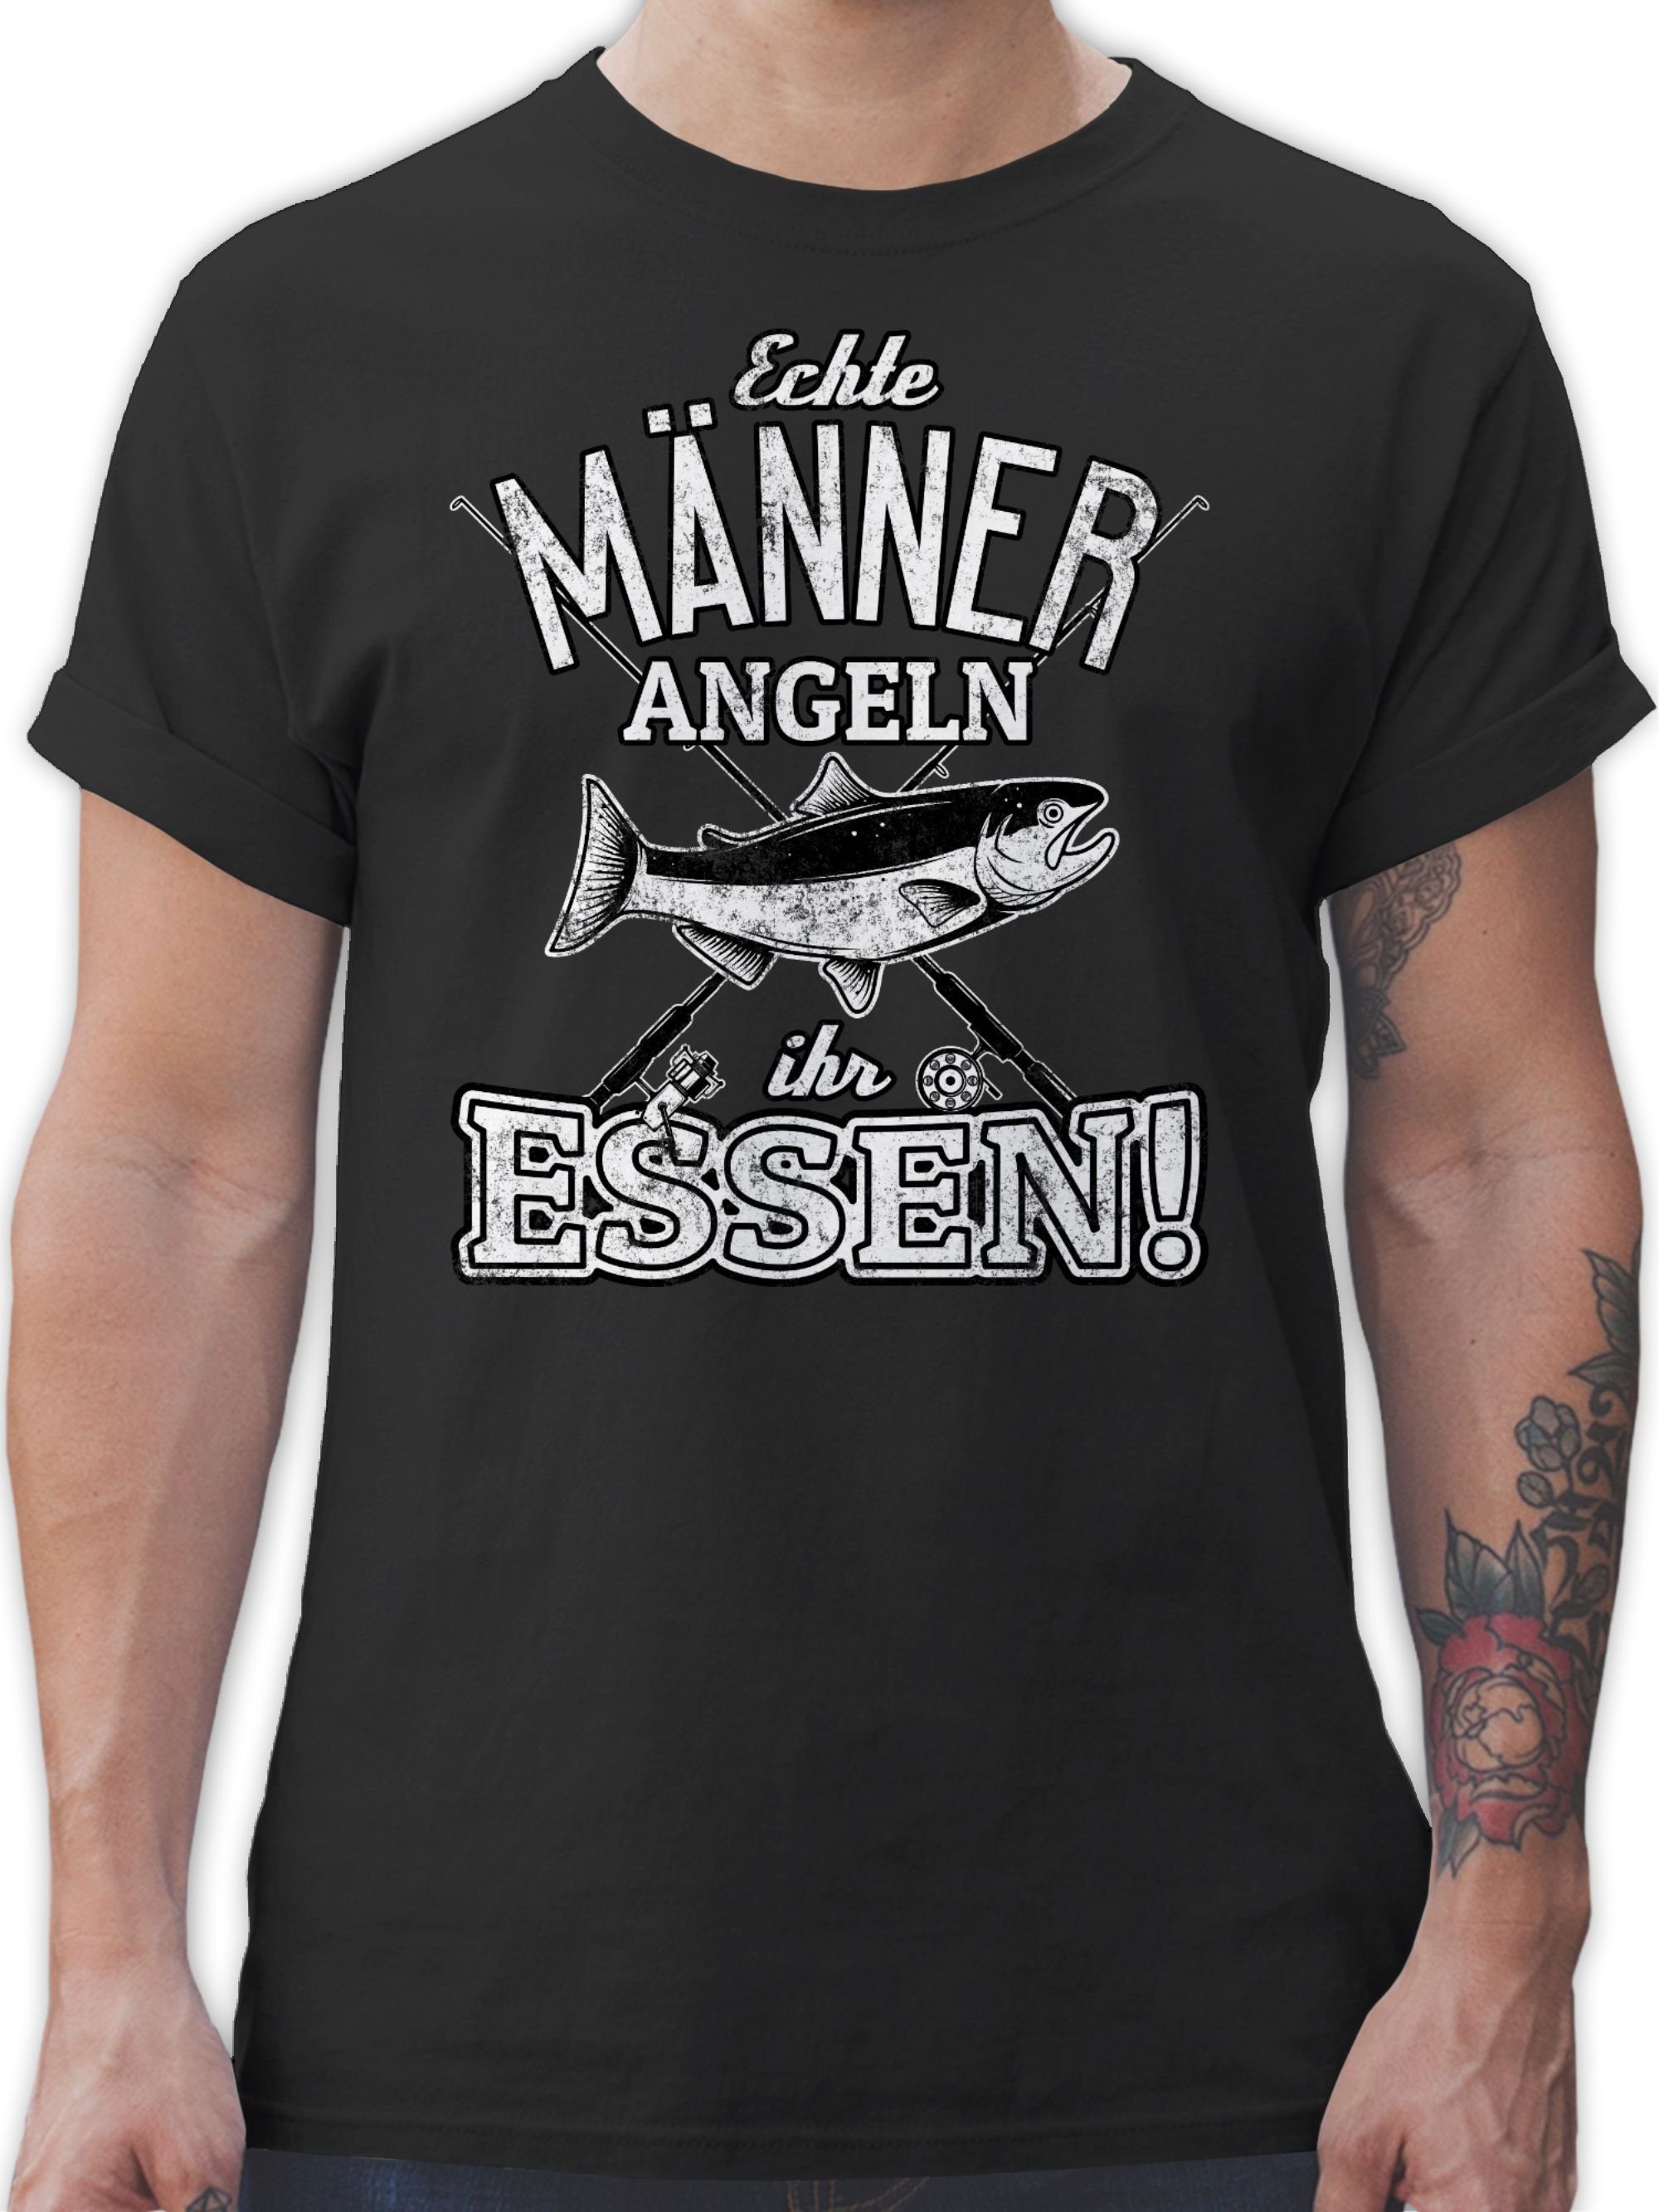 Angler 01 Schwarz T-Shirt angeln Echte ihr Geschenke Shirtracer Essen Männer